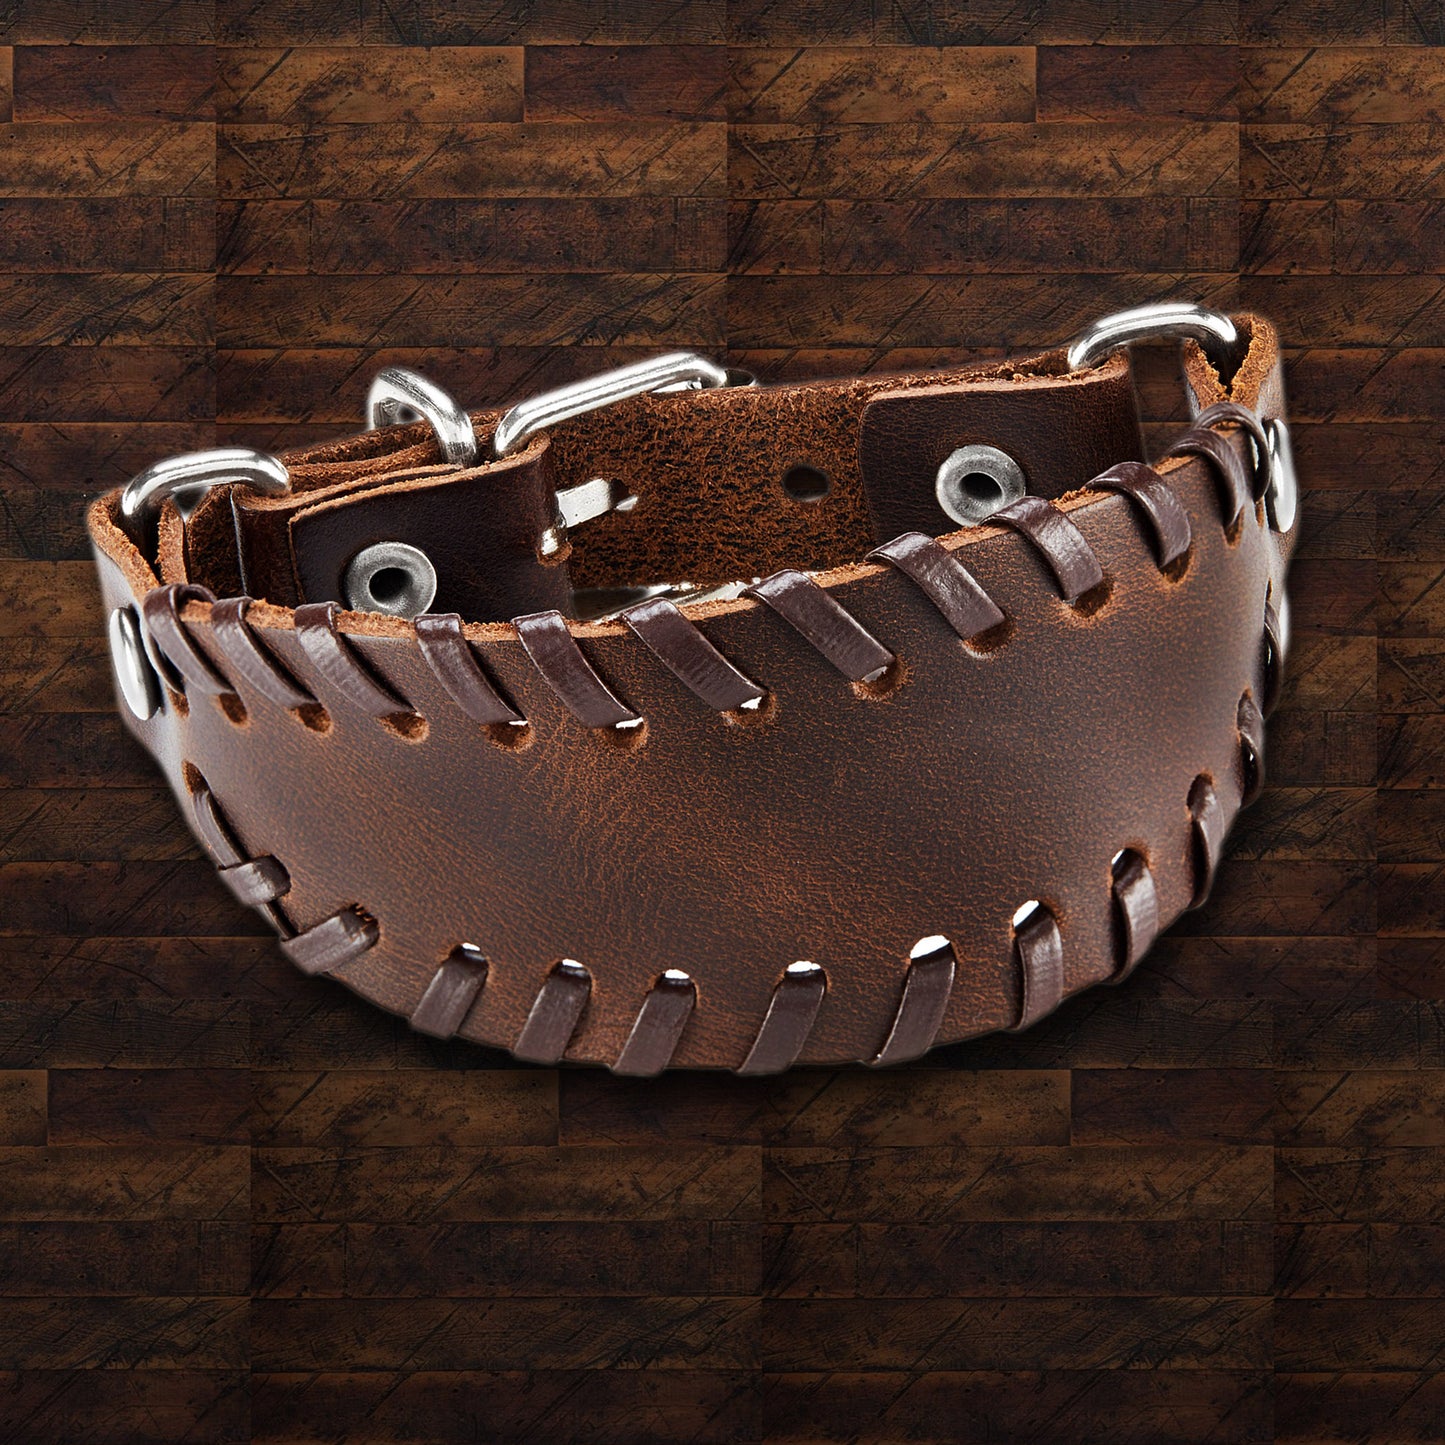 Men's Brown Leather Stitched Bund Buckle Cuff Bracelet